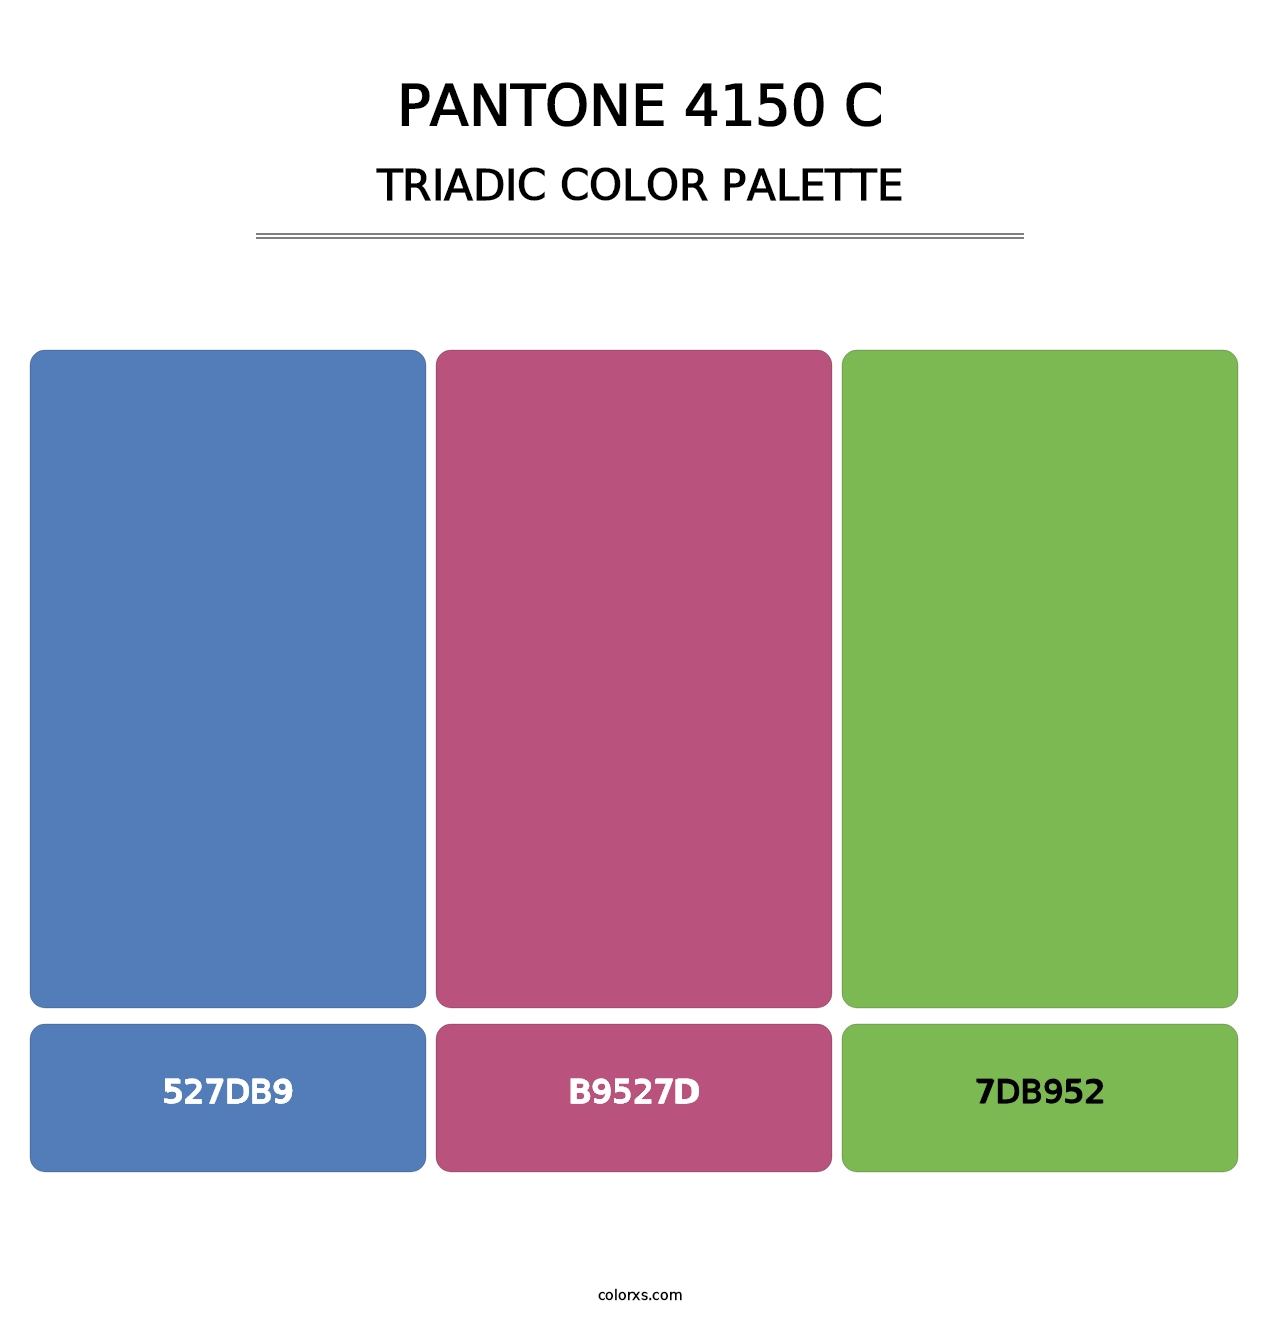 PANTONE 4150 C - Triadic Color Palette